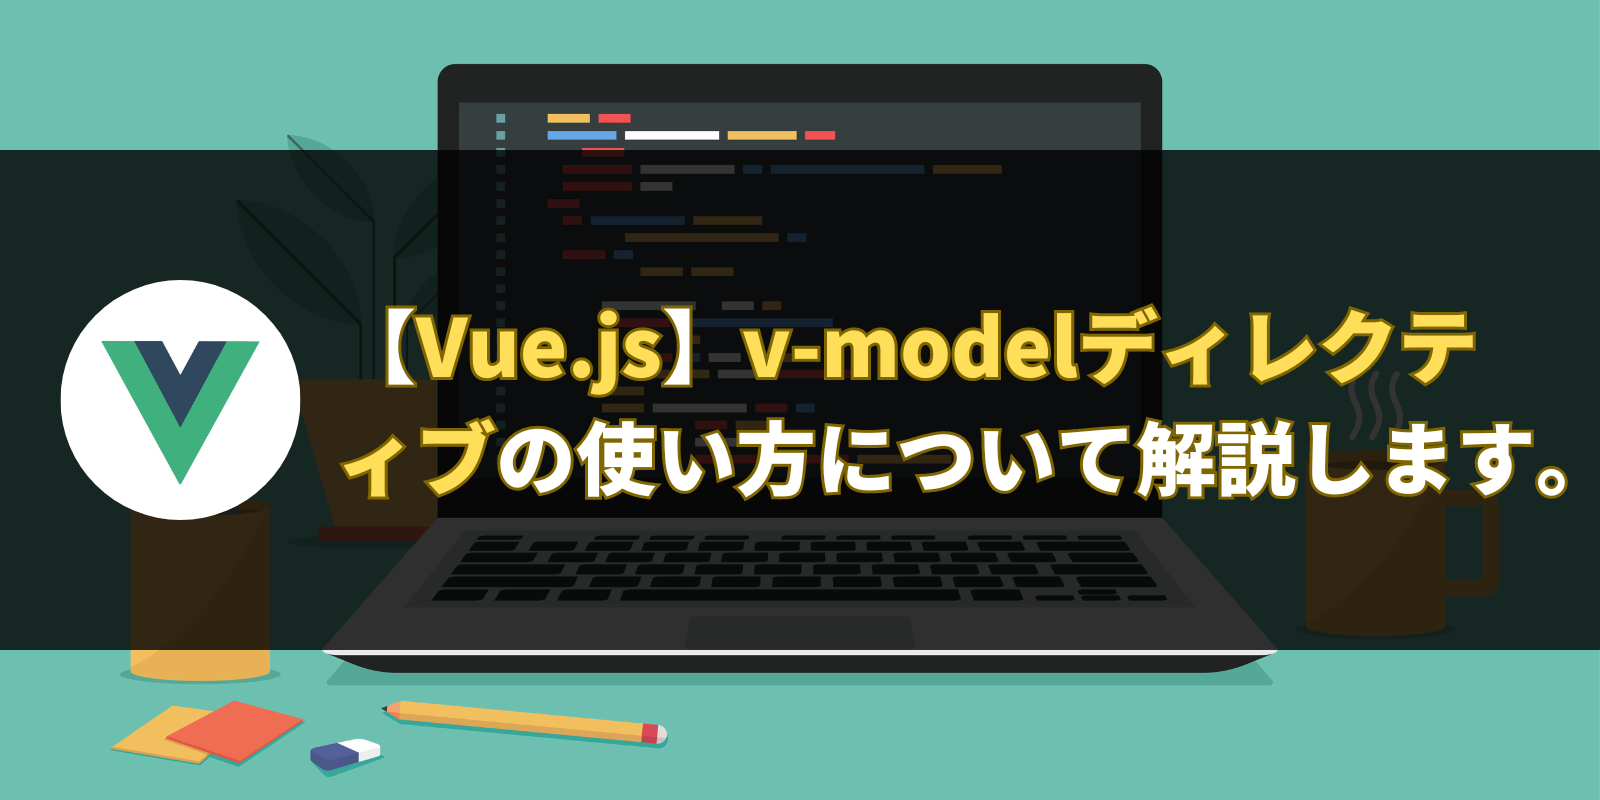 【Vue.js】v-modelディレクティブの使い方について解説します。